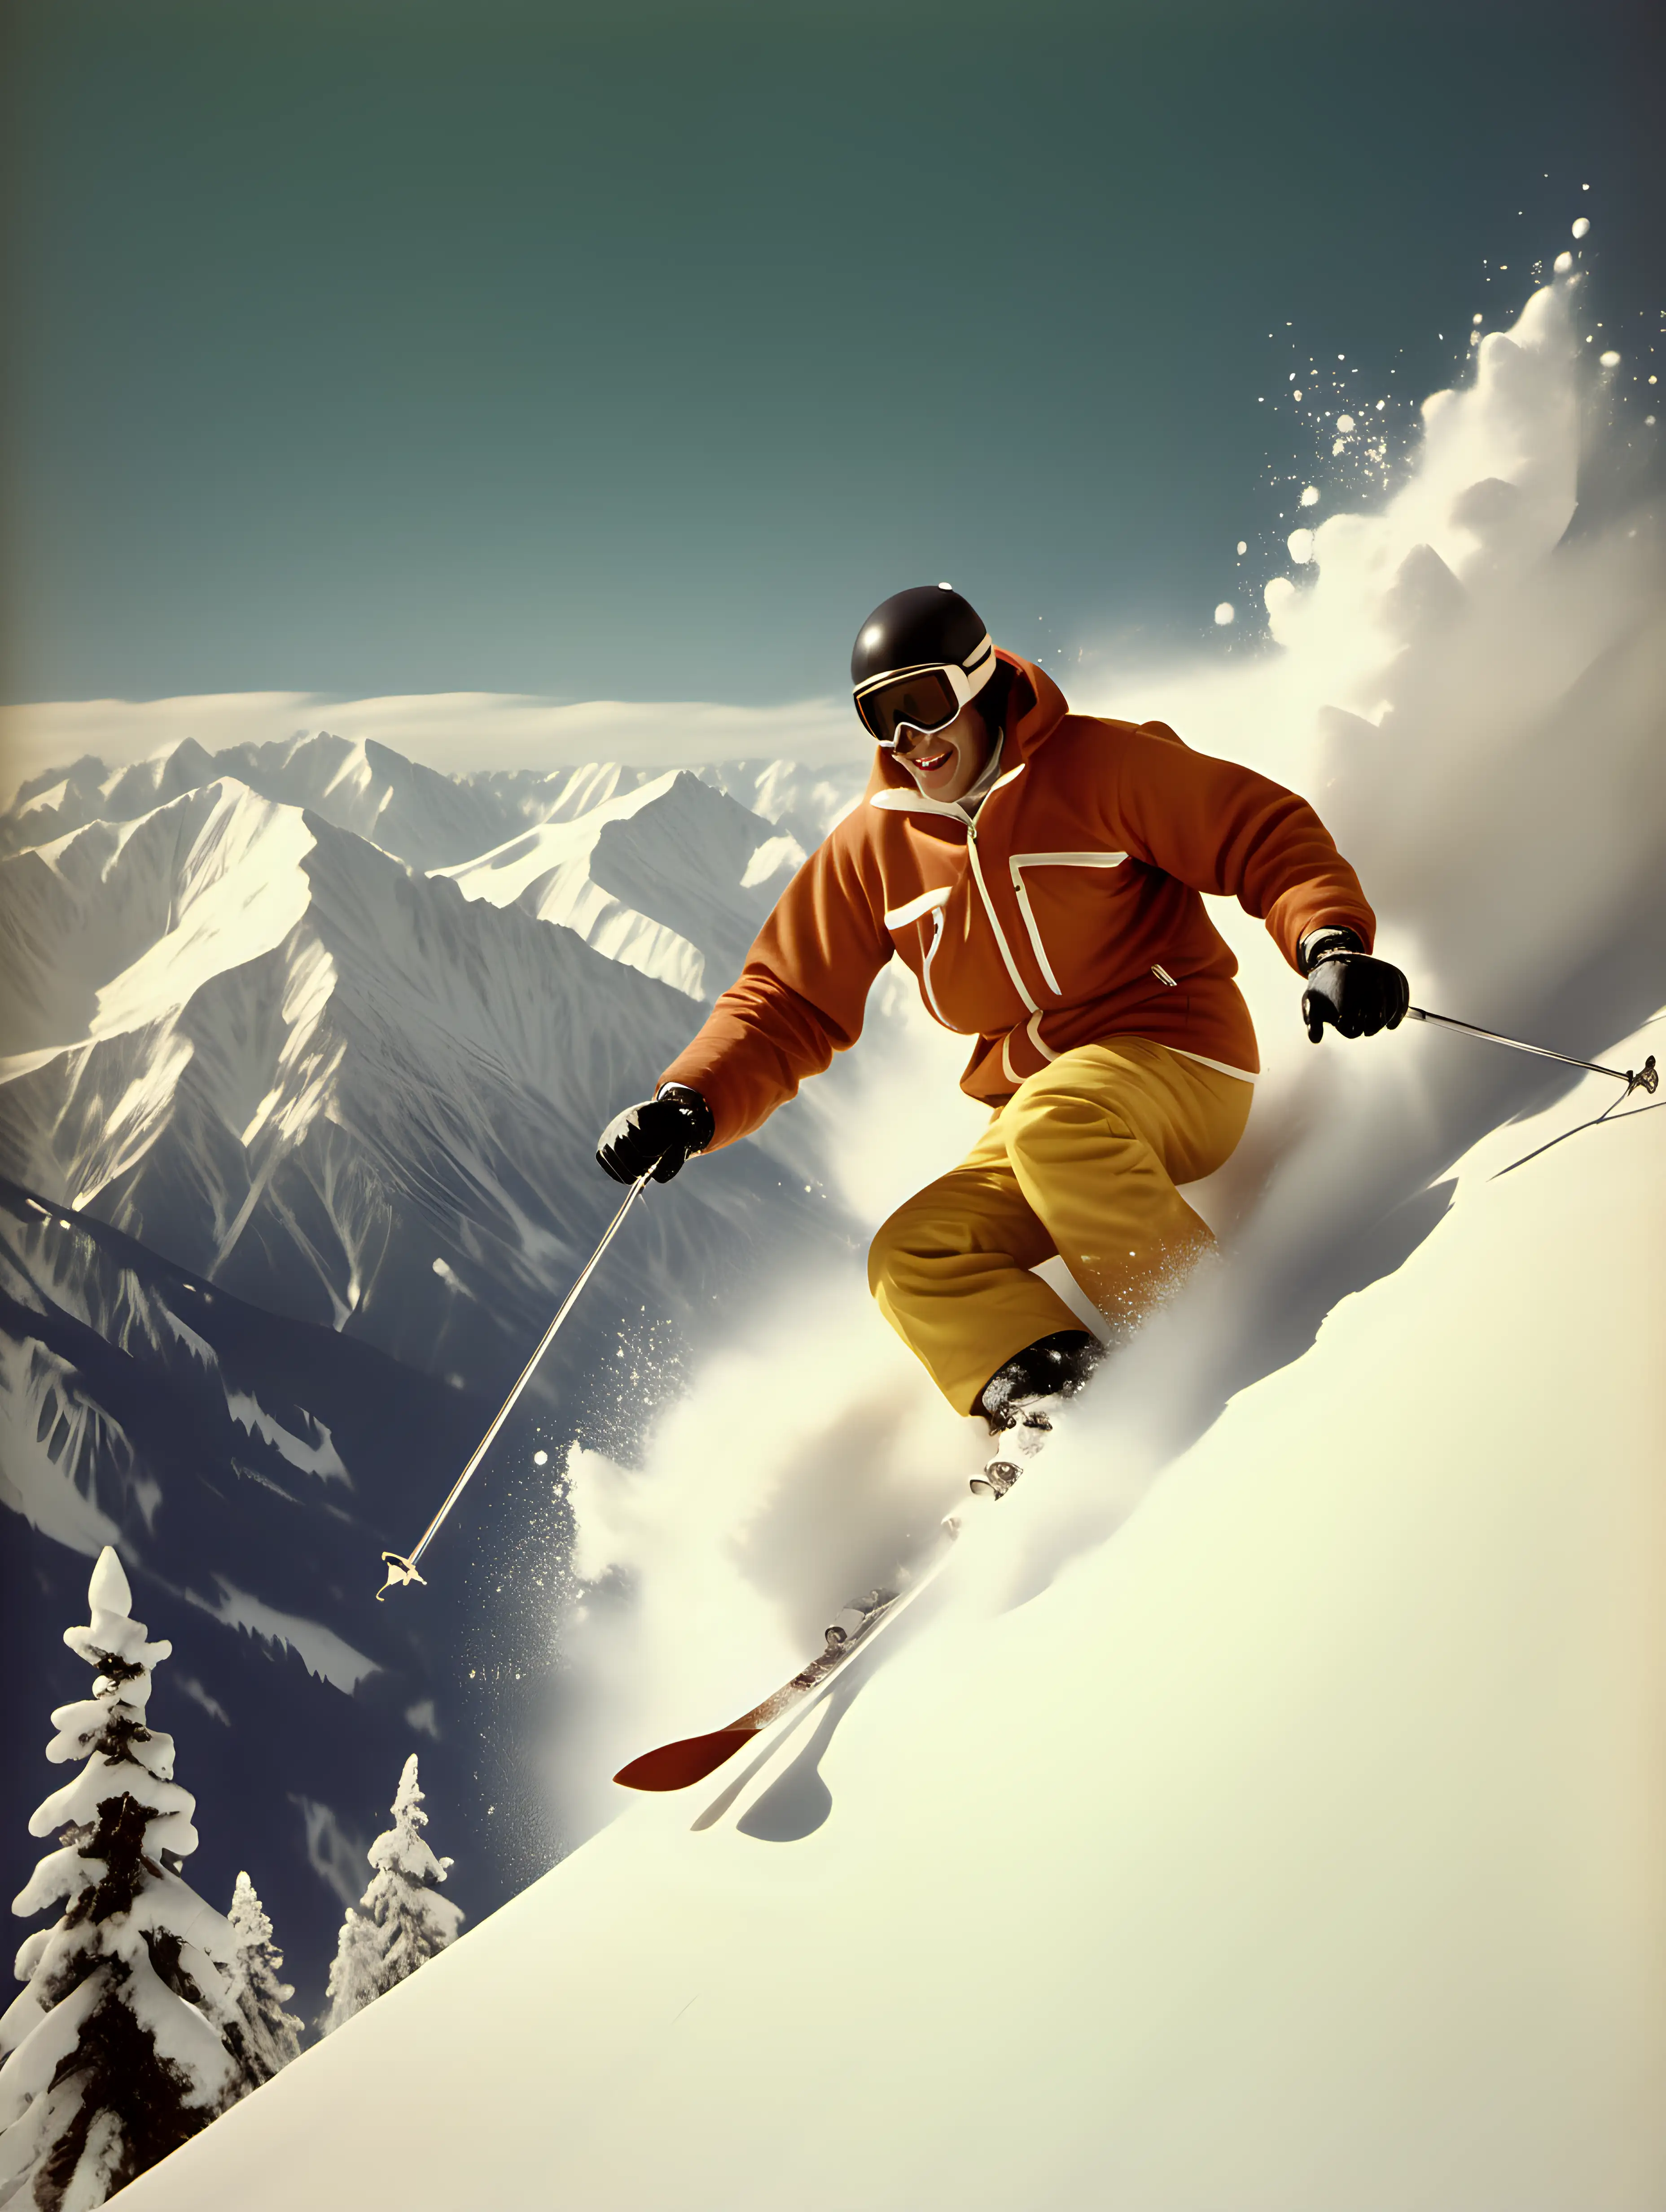 un skieur en vol dans de la neige poudreuse, les montagnes escarpées enneigées.
ambiance vintage année 70